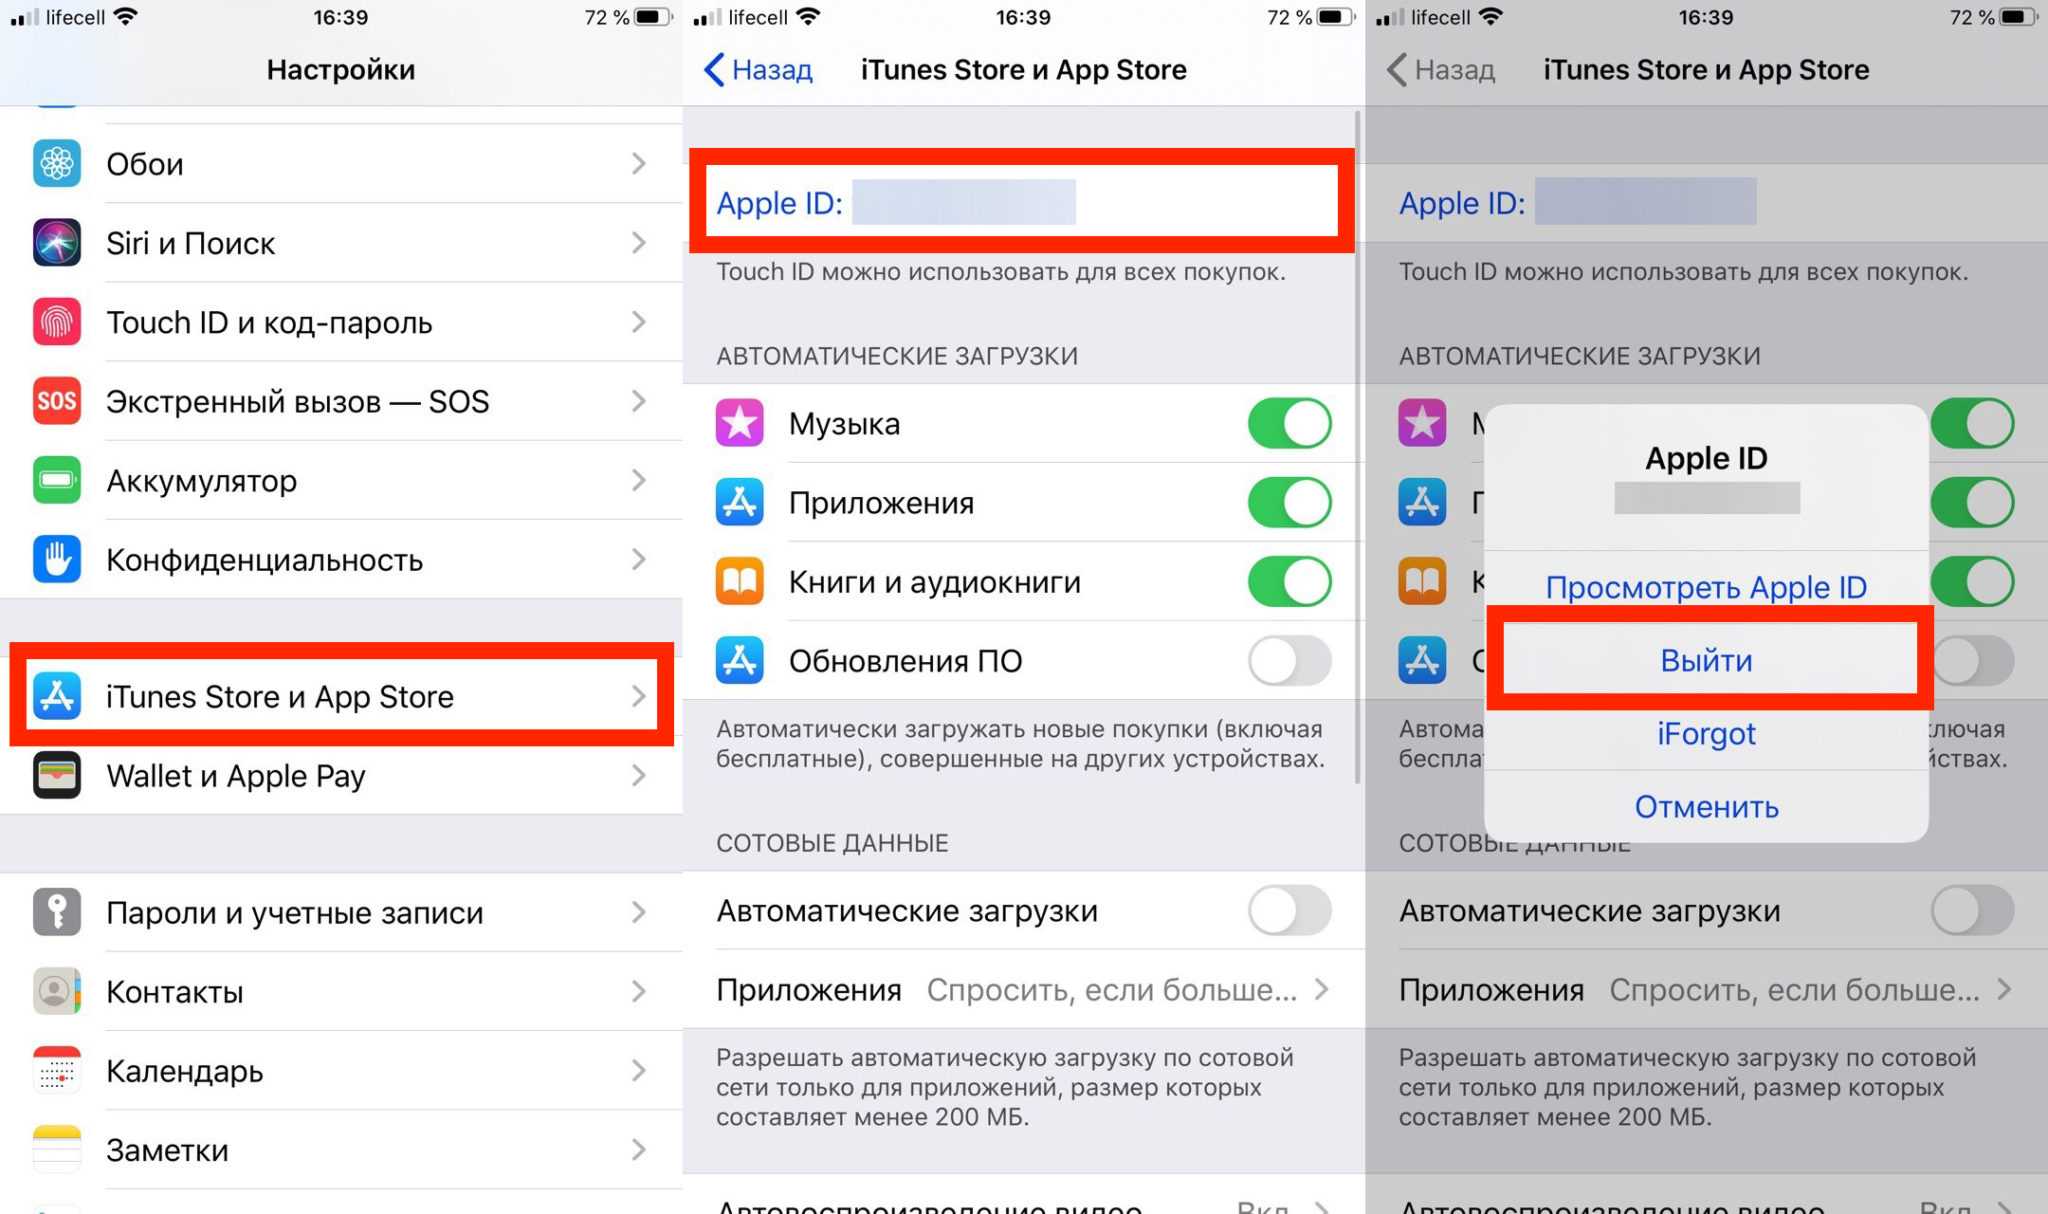 Apple открыла представительство в россии. закон о приземлении — что это. где находится представительство apple в россии